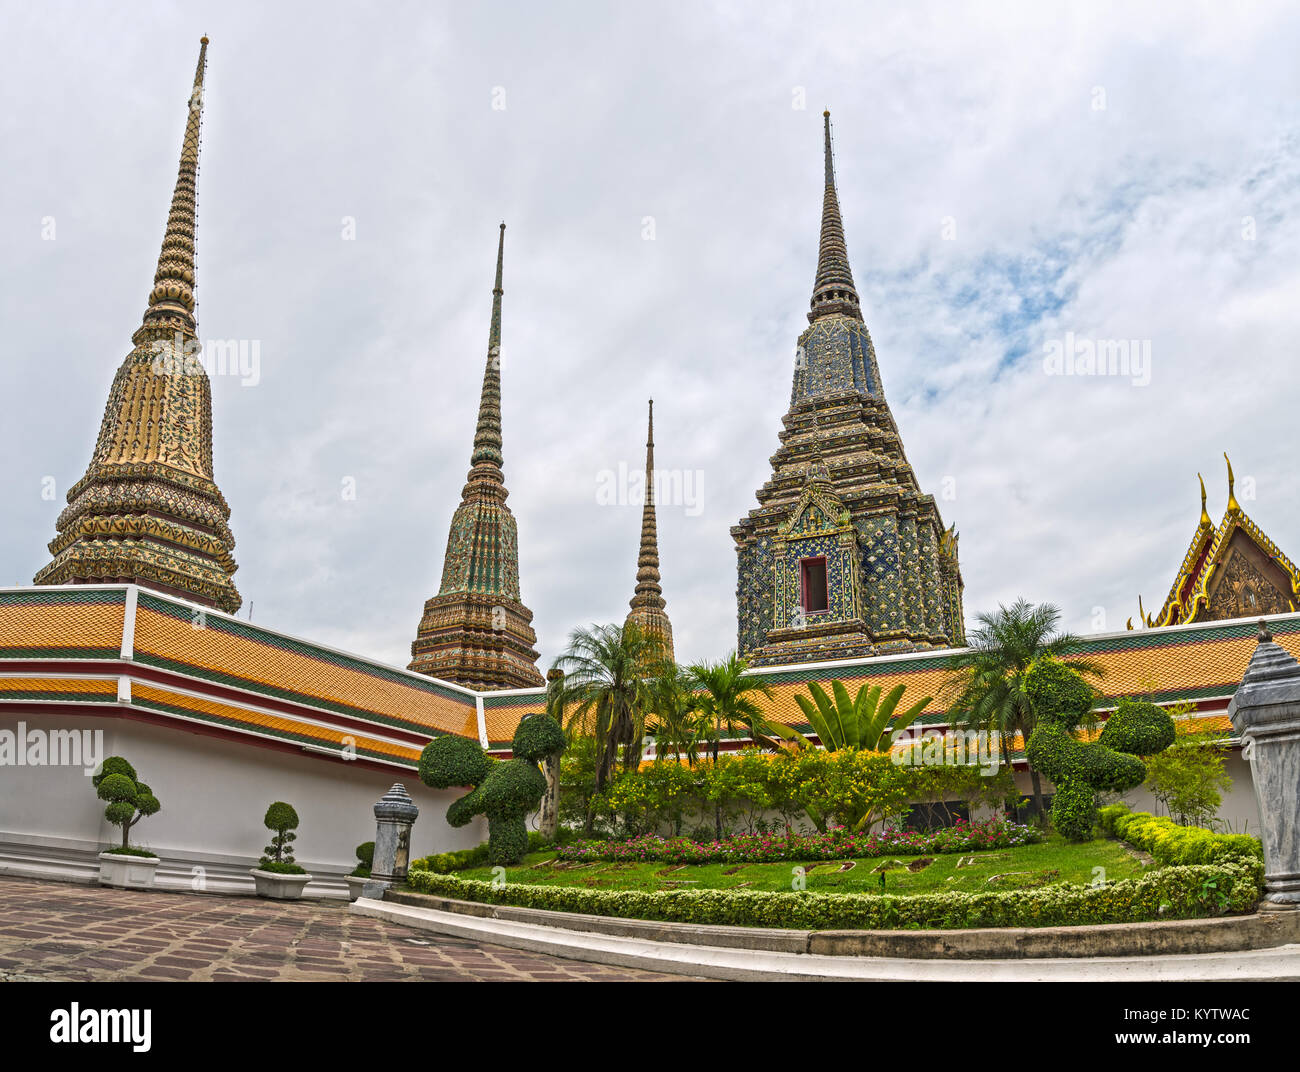 Bajo el ángulo de las Pagodas en el templo budista de Wat Pho, Bangkok, Tailandia. Foto de stock